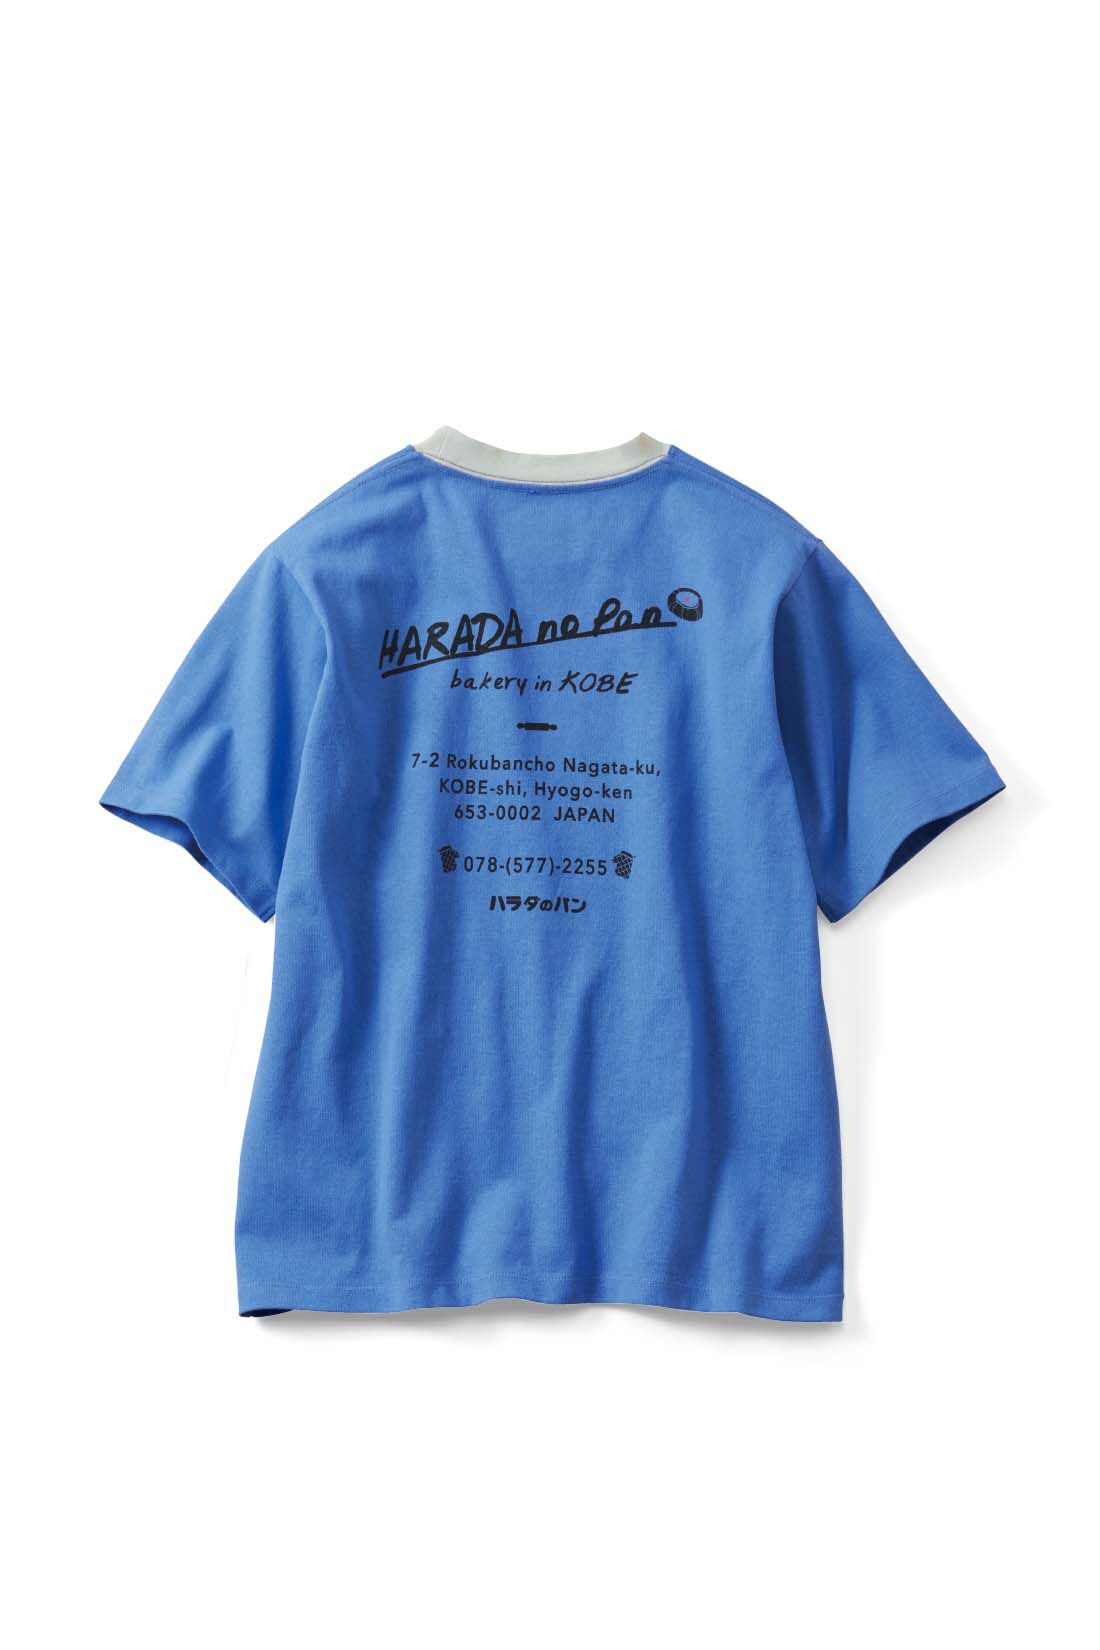 Live in  comfort|Live love cottonプロジェクト リブ イン コンフォート神戸のベーカリーハラダのパンさんとつくったオーガニックコットンのレトロかわいいTシャツ〈ベビーピンク〉|back